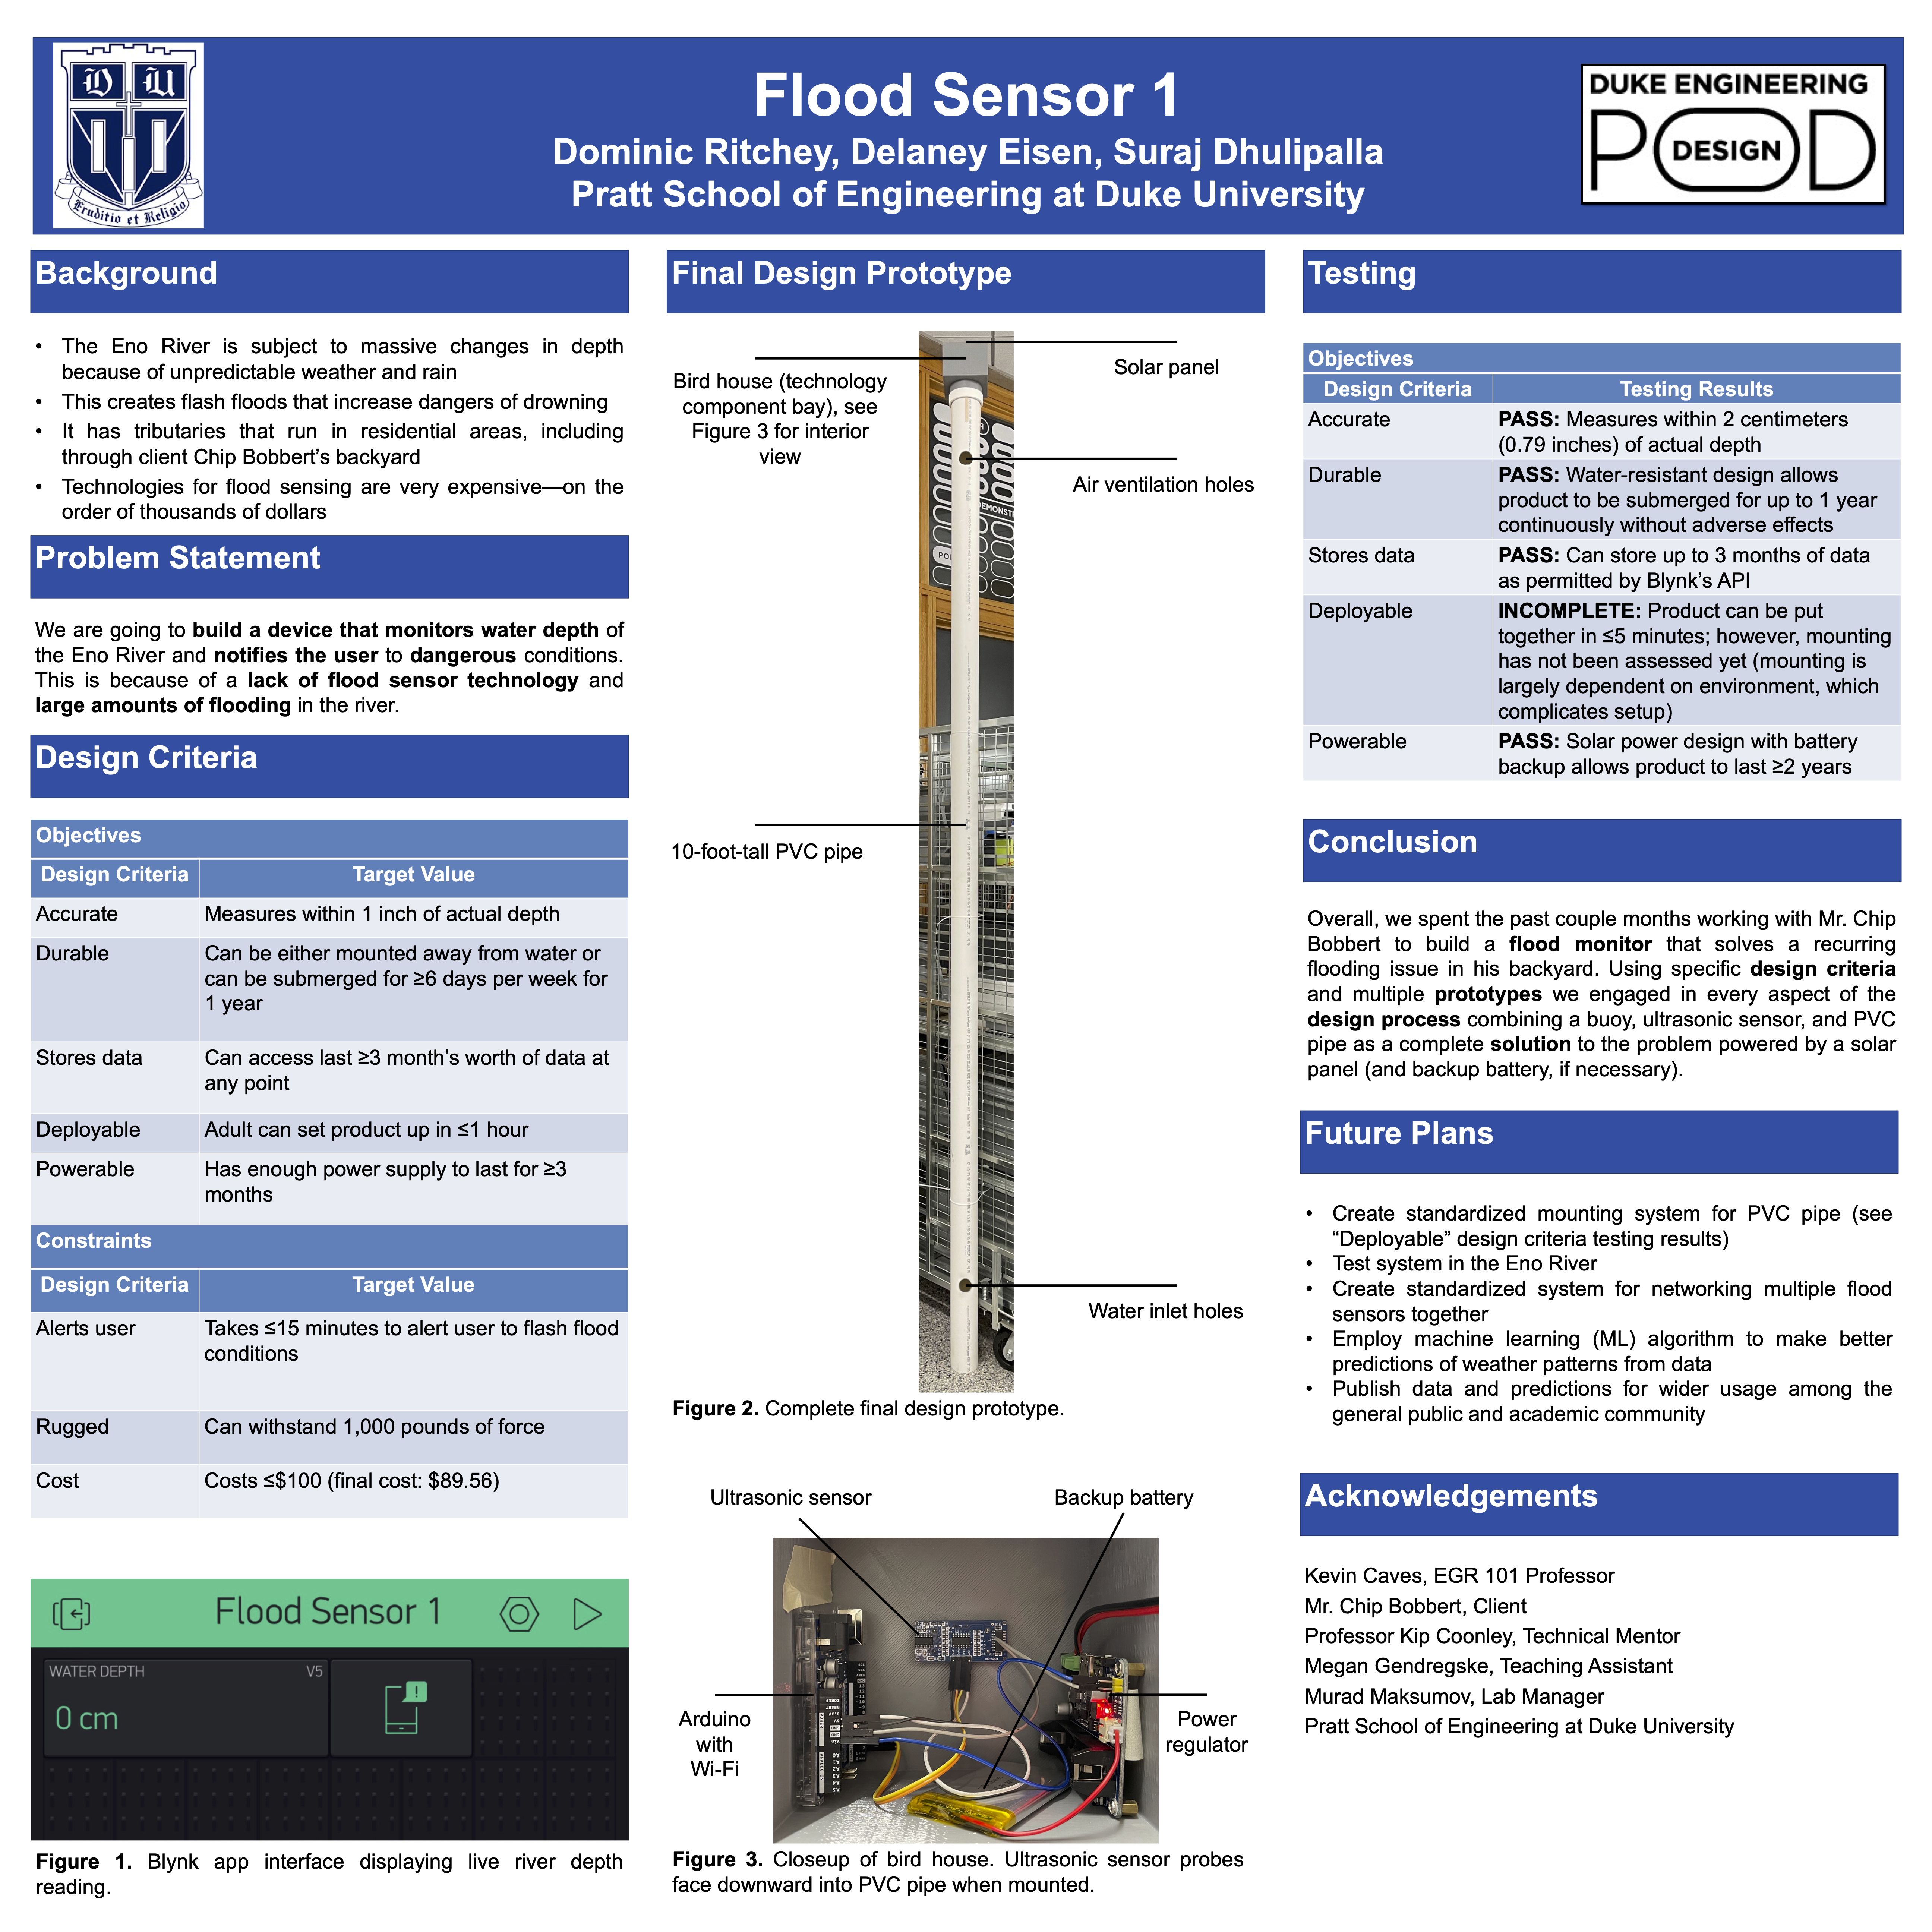 EGR 101 poster for flood sensor